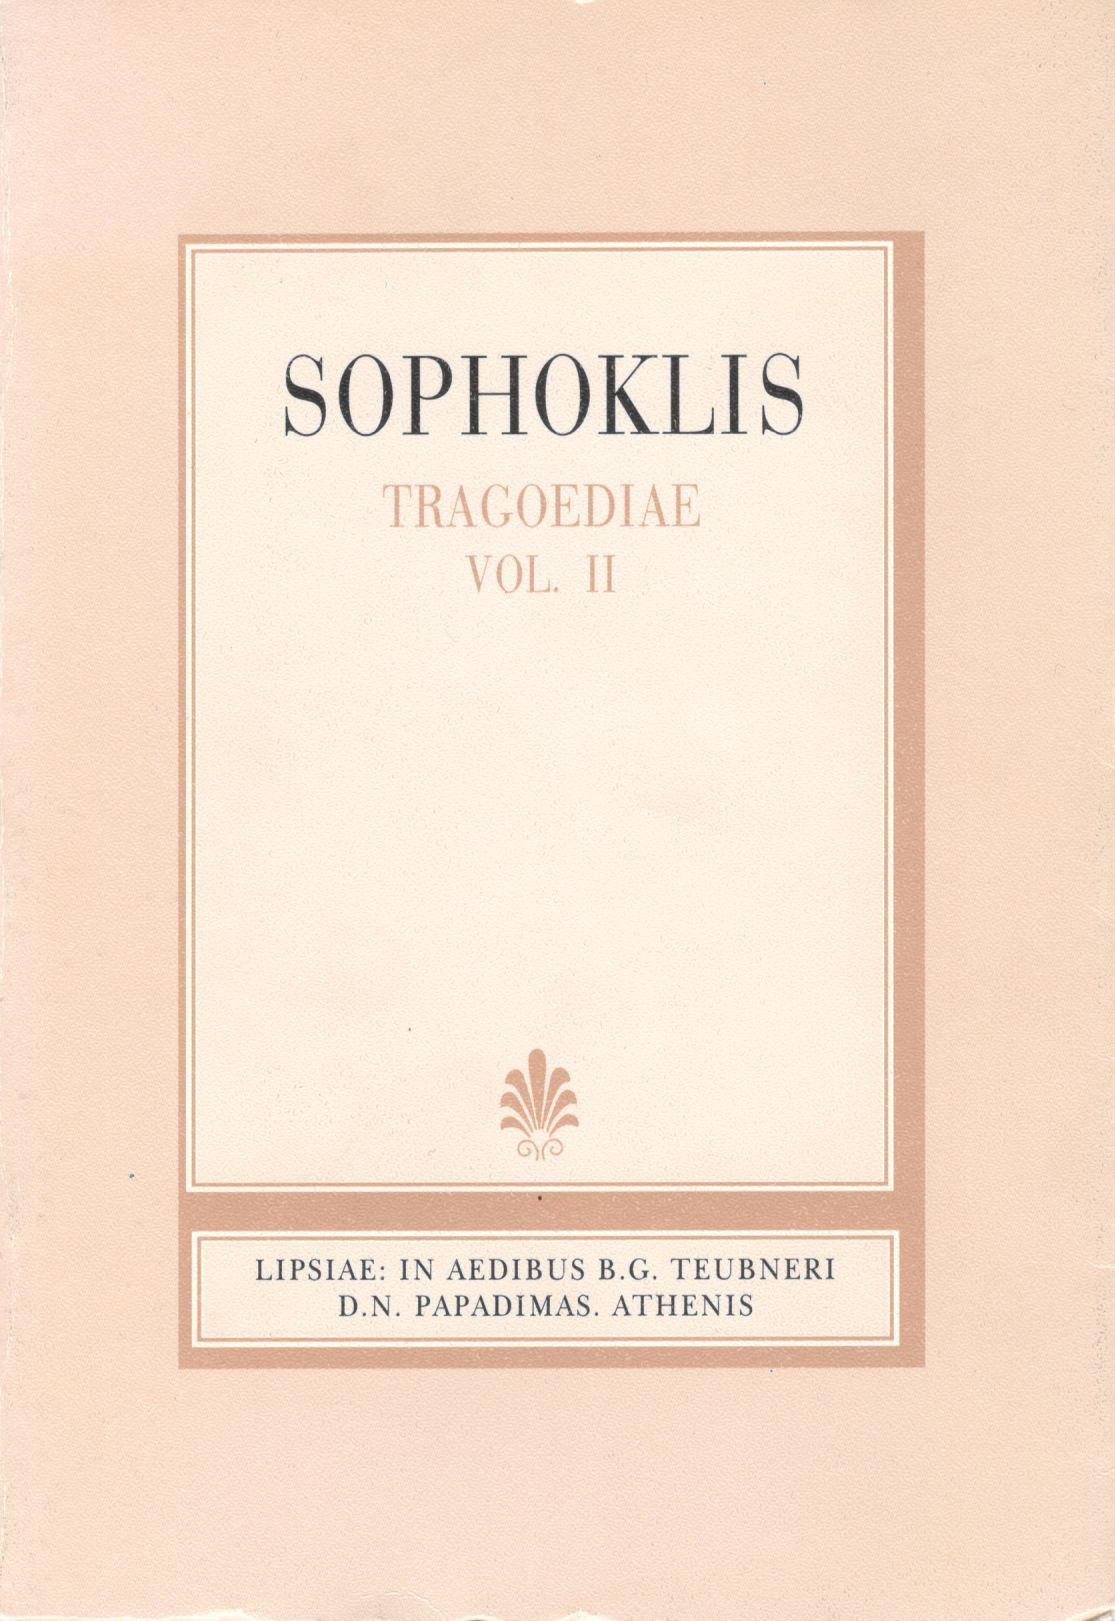 Sophoclis, Tragoediae, Vol. II, [Σοφοκλέους, Τραγωδίαι, τ. Β